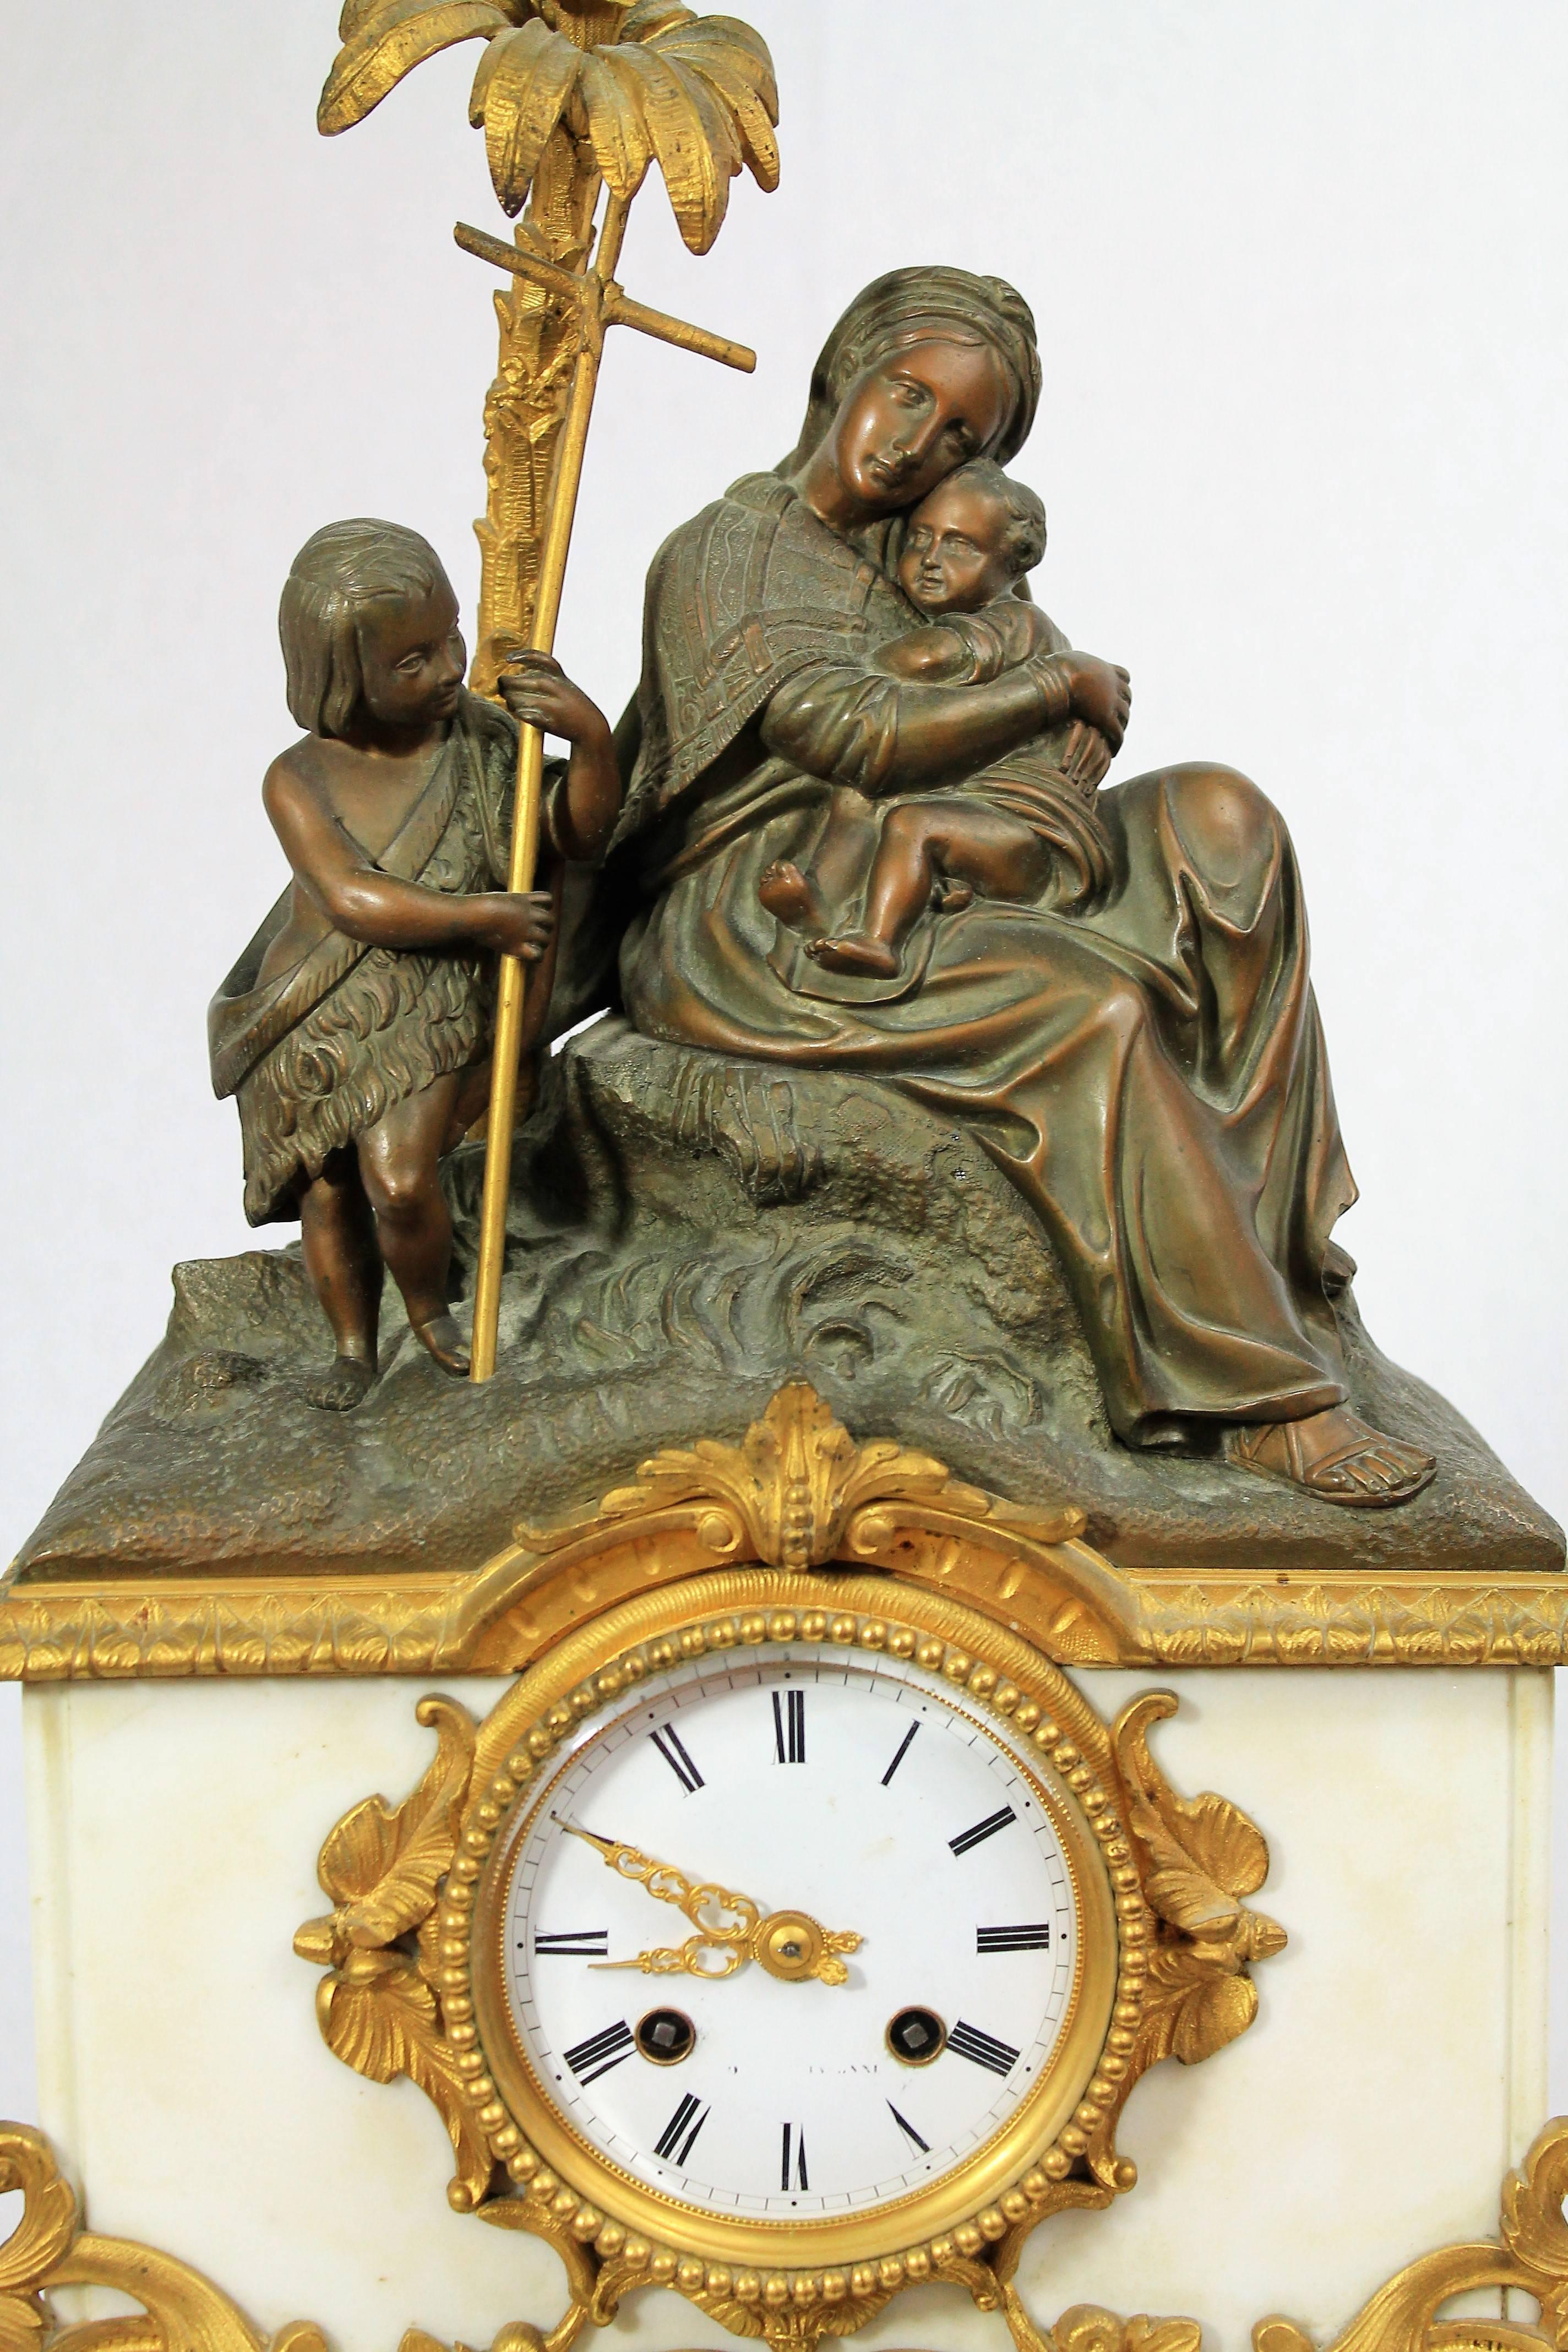 Très belle pendule de cheminée en marbre, bronze patiné et doré représentant la Vierge Marie assise sur un rocher tenant l'enfant Jésus dans ses bras, avec à leurs côtés saint Jean-Baptiste enfant tenant sa crosse.

Belle patine du bronze, beau